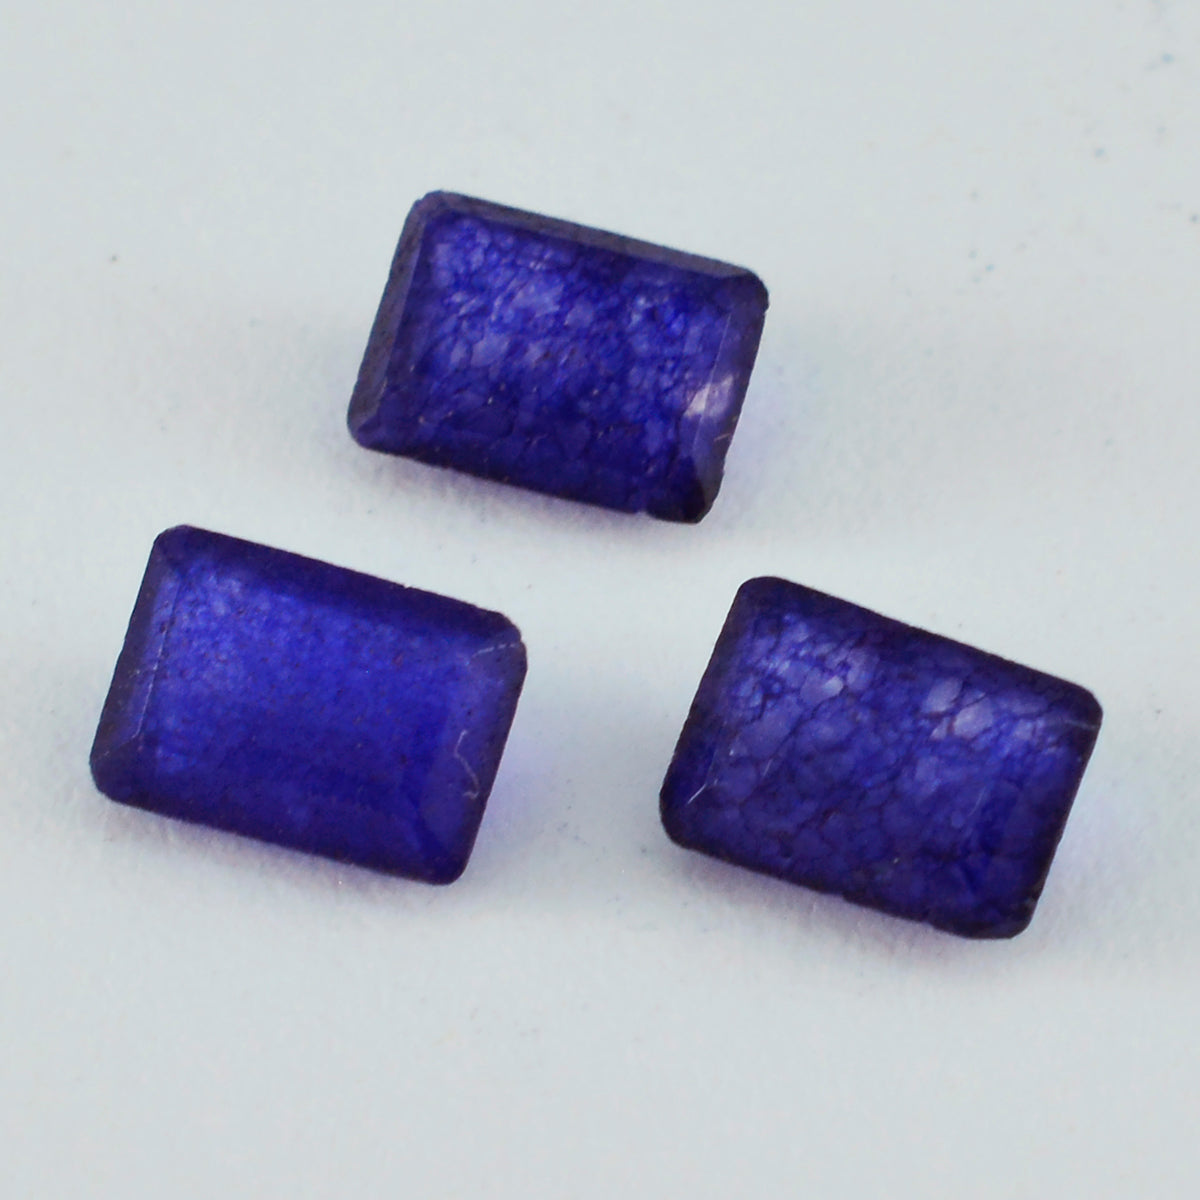 riyogems 1pc ナチュラル ブルー ジャスパー ファセット 7x9 mm 八角形の見栄えの良い品質の宝石